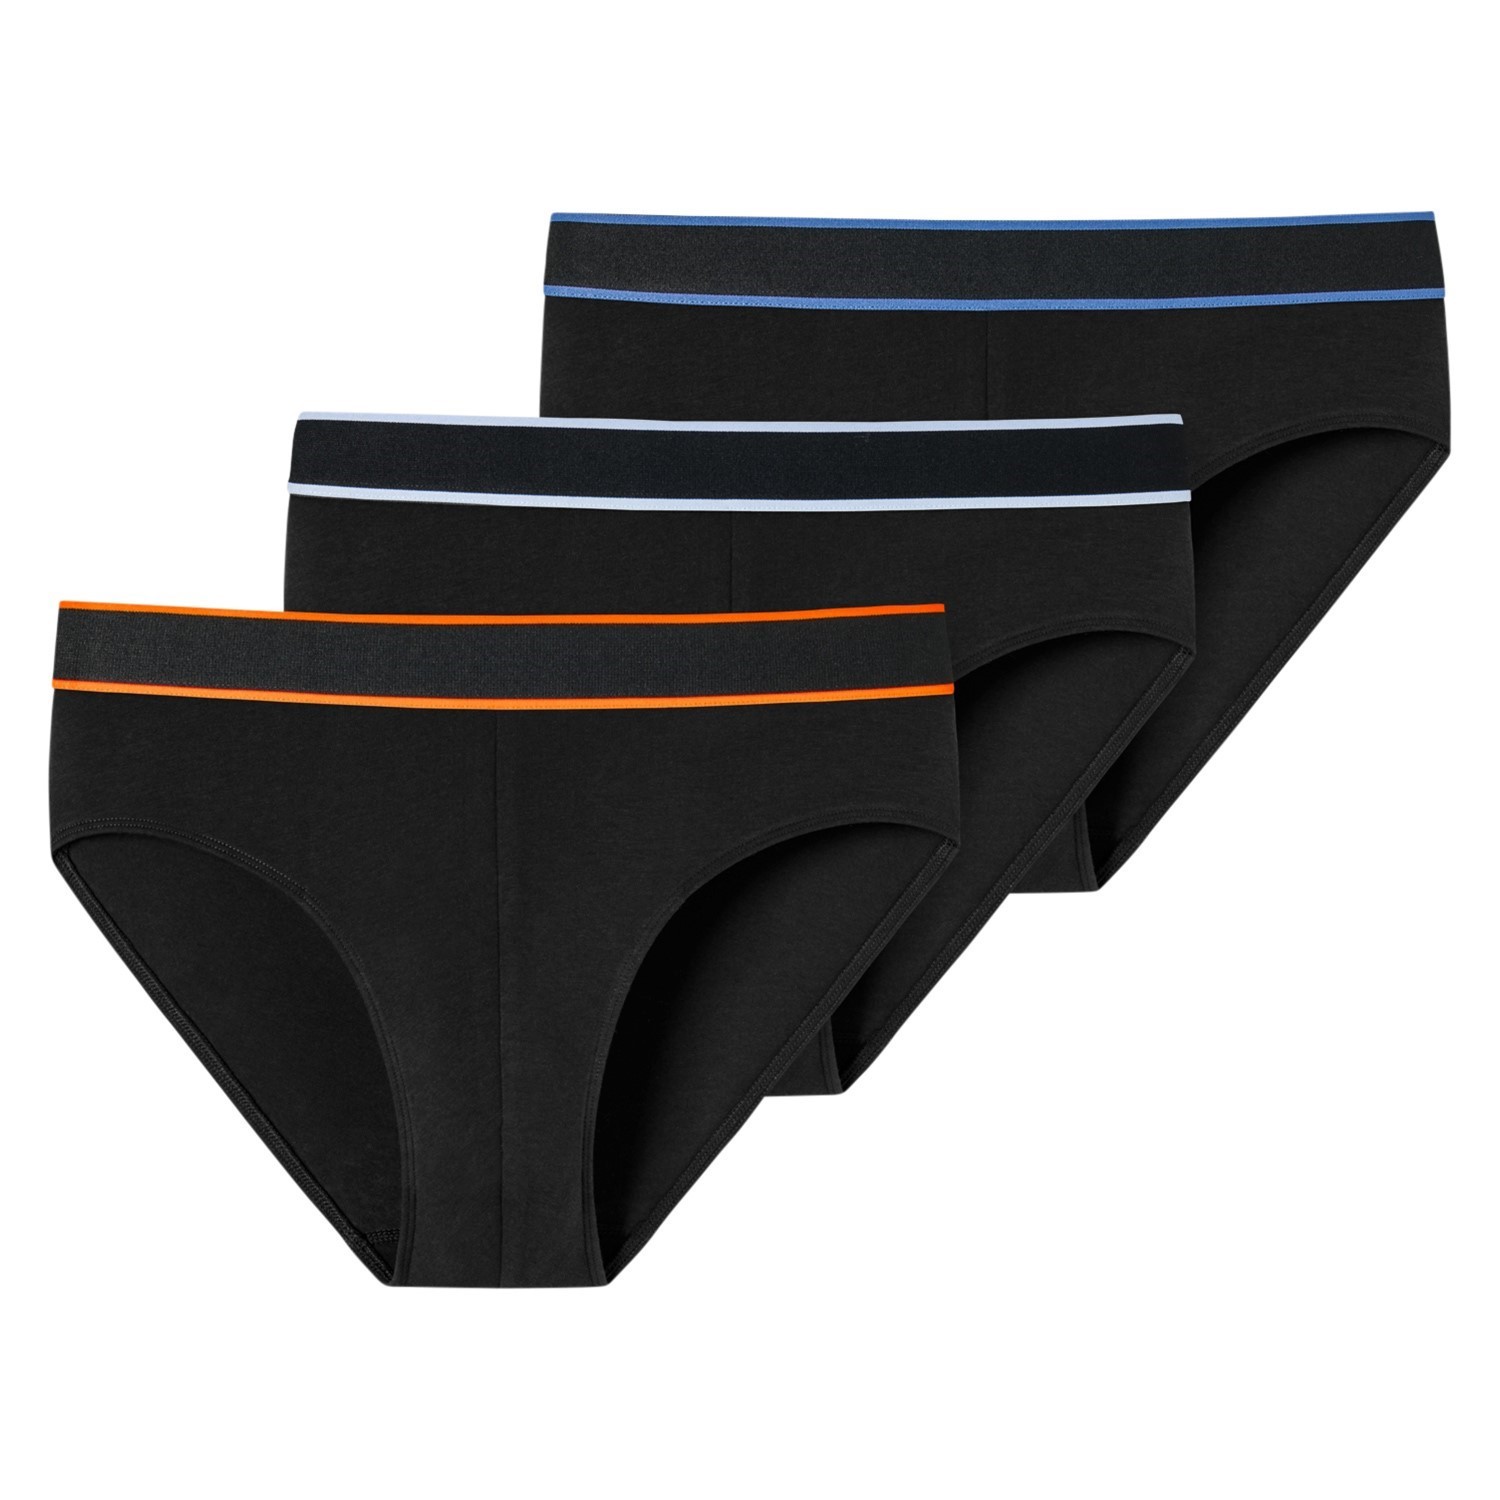 Schiesser Set of 3 Organic Cotton Mini Briefs - Underwear from   UK